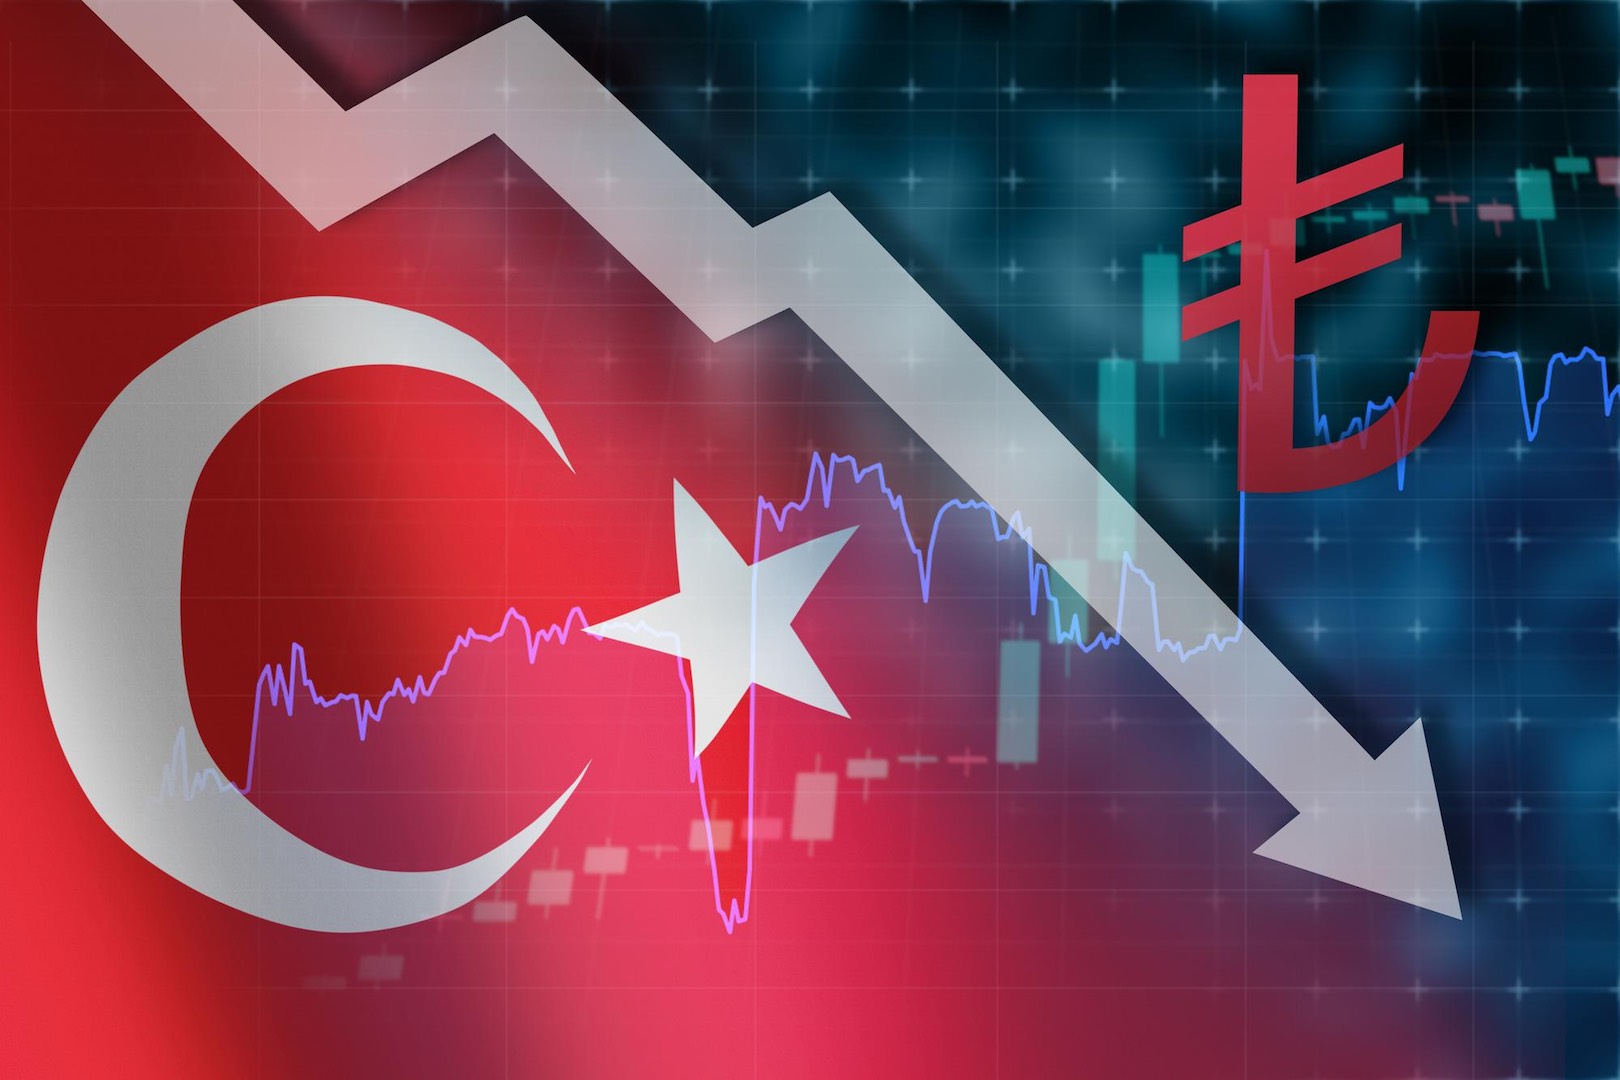 ستاندرد آند بورز تتوقع تراجع نمو اقتصاد قطر إلى 2 % هذا العام وتقارير تركيا.. الليرة تسجل مستوى قياسياً منخفضاً مقابل الدولار